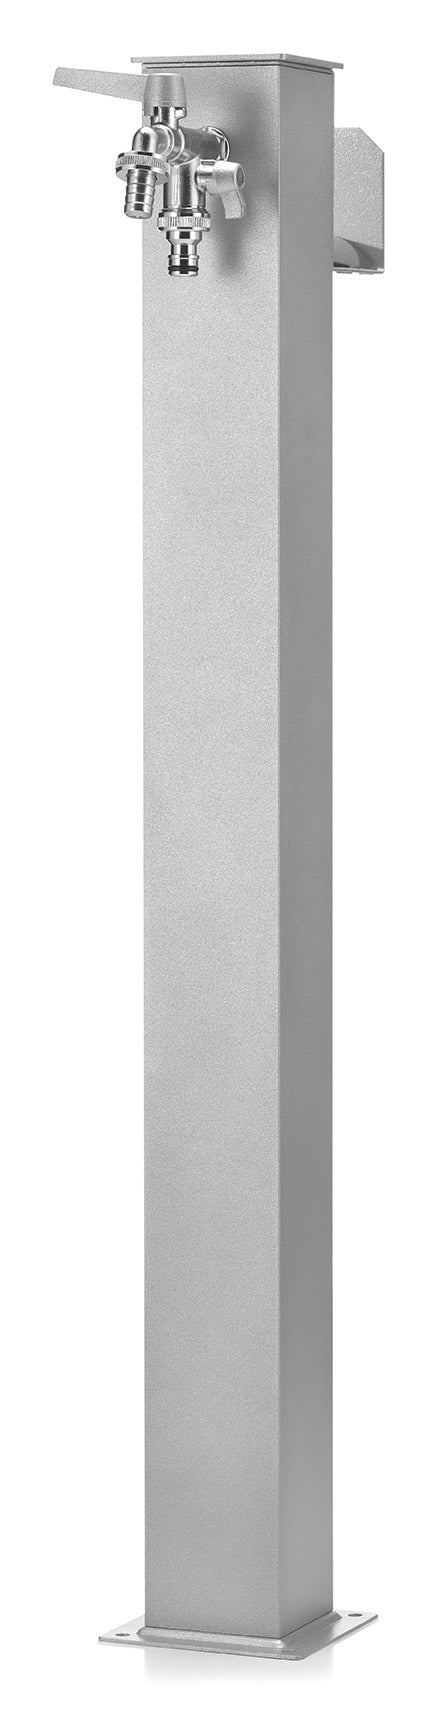 Fontana da Giardino con Doppio Rubinetto Belfer 42/QRR Alluminio prezzo